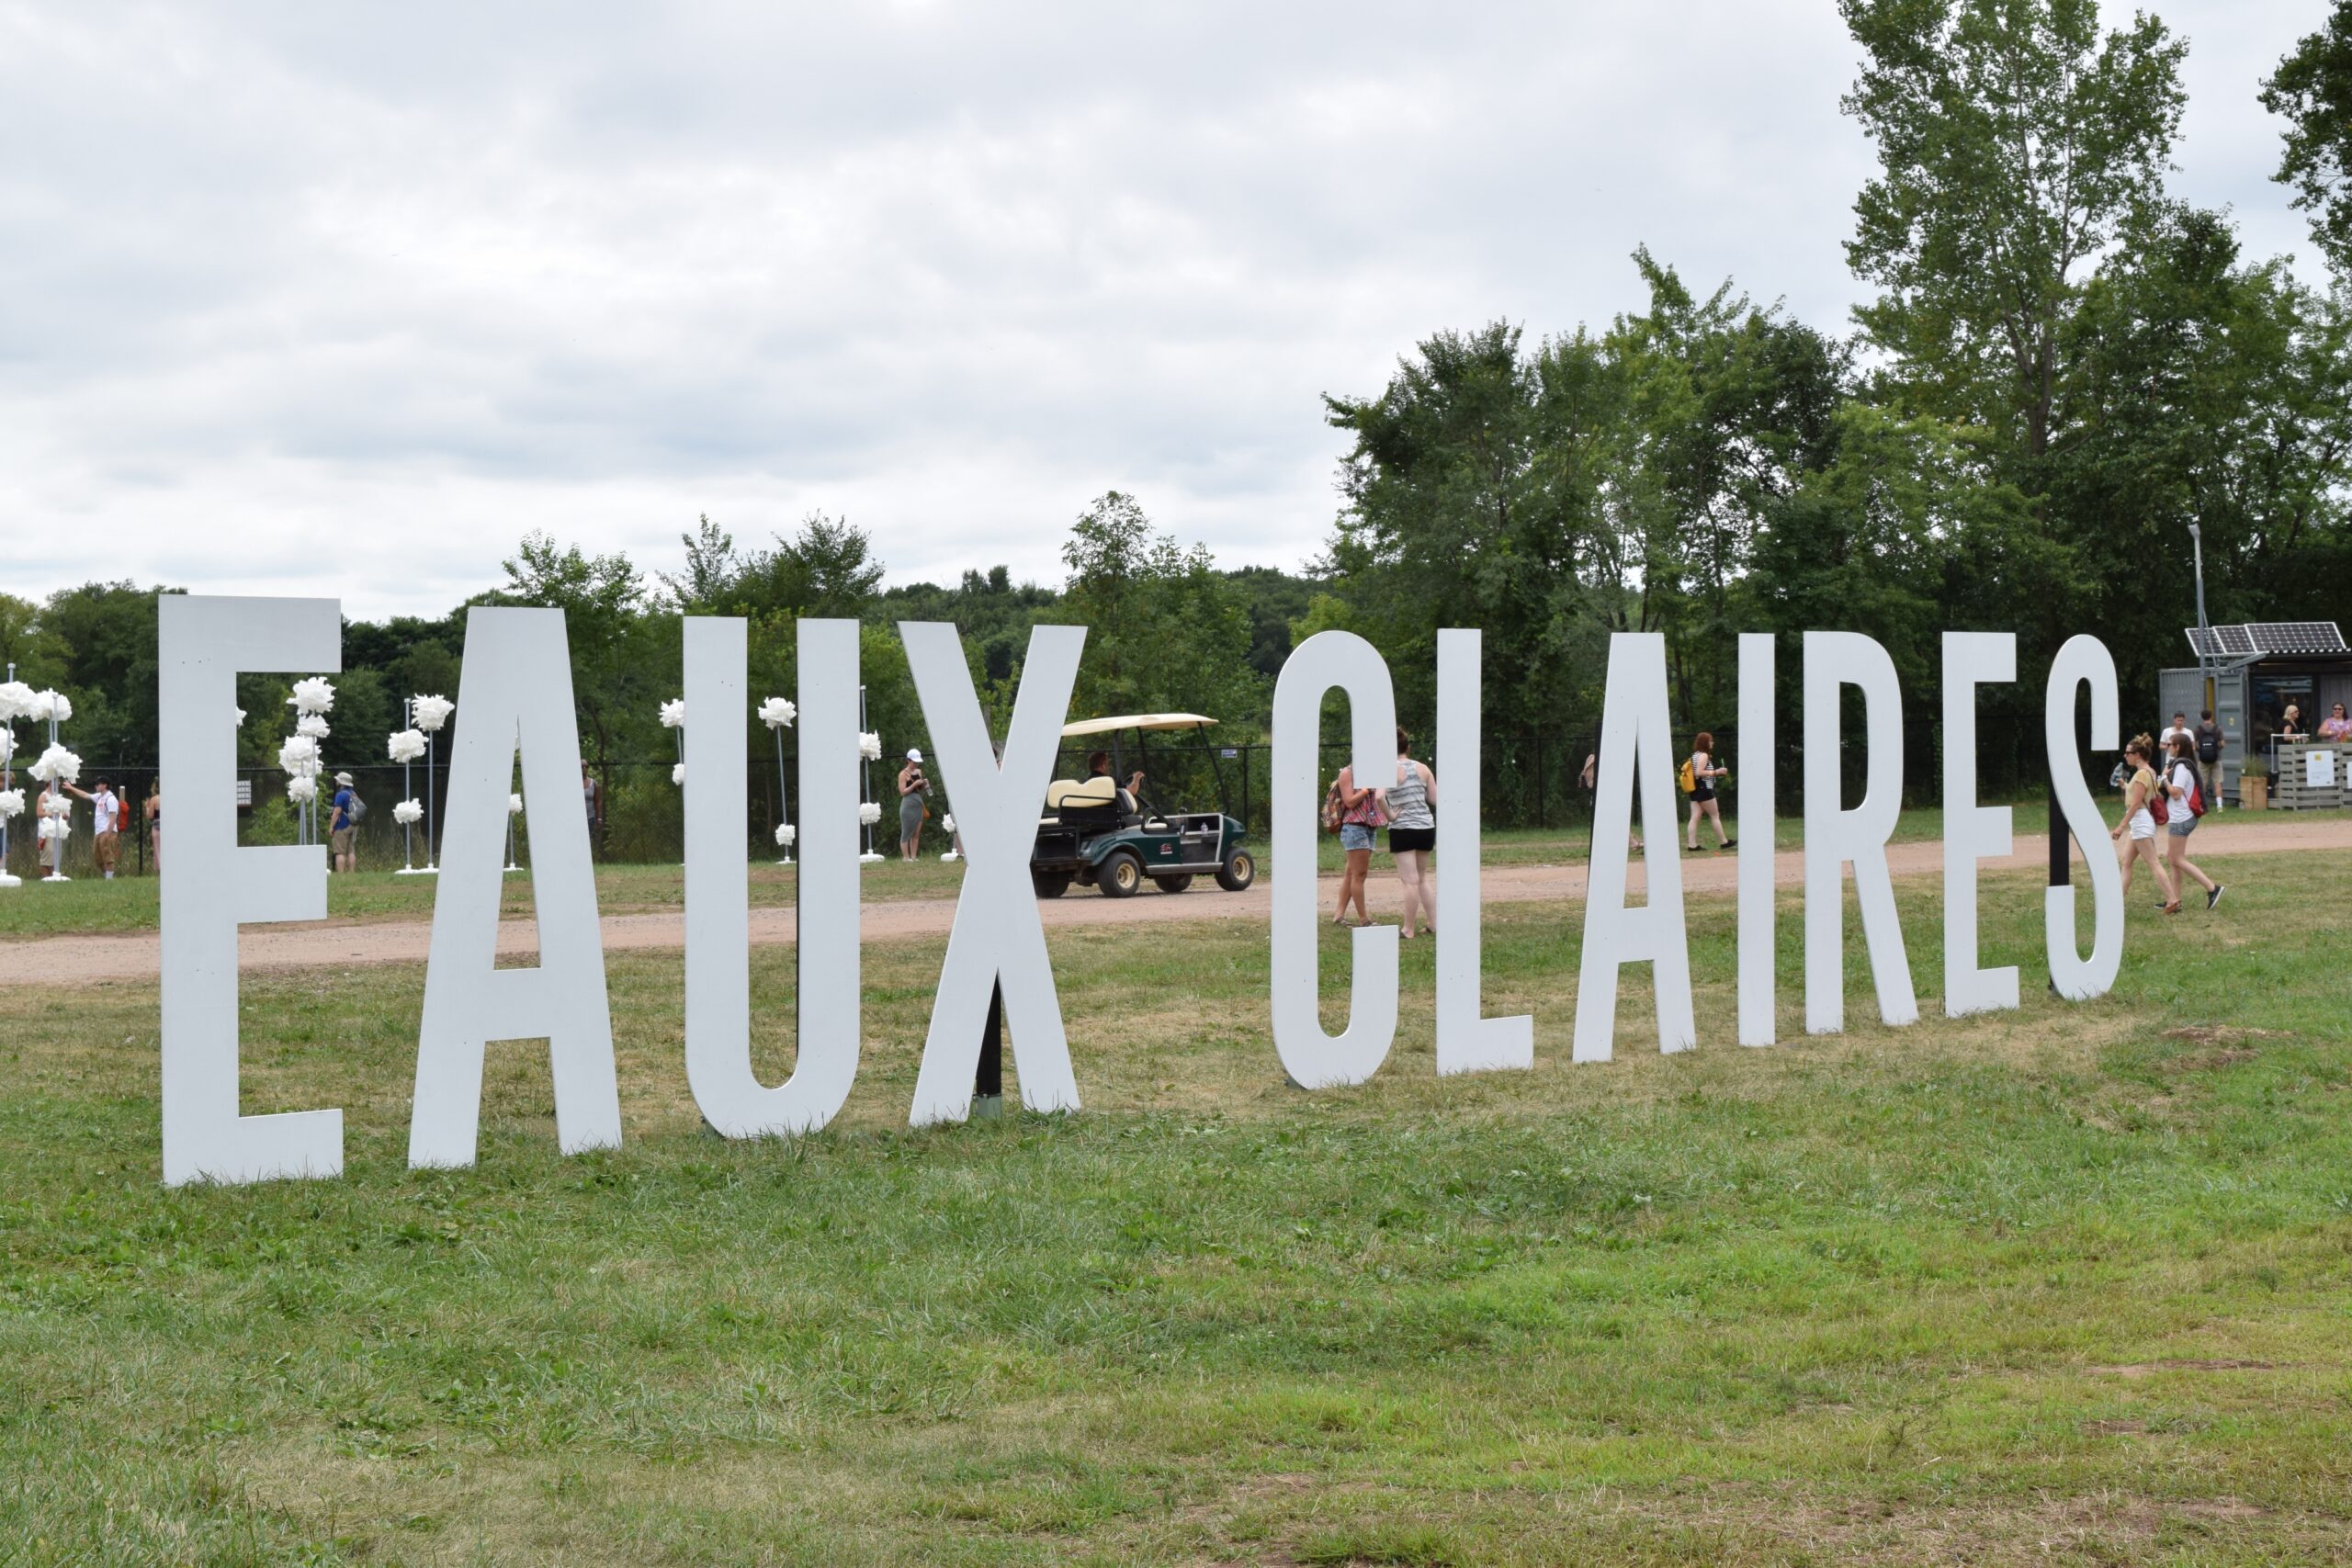 Eaux Claires Music Festival